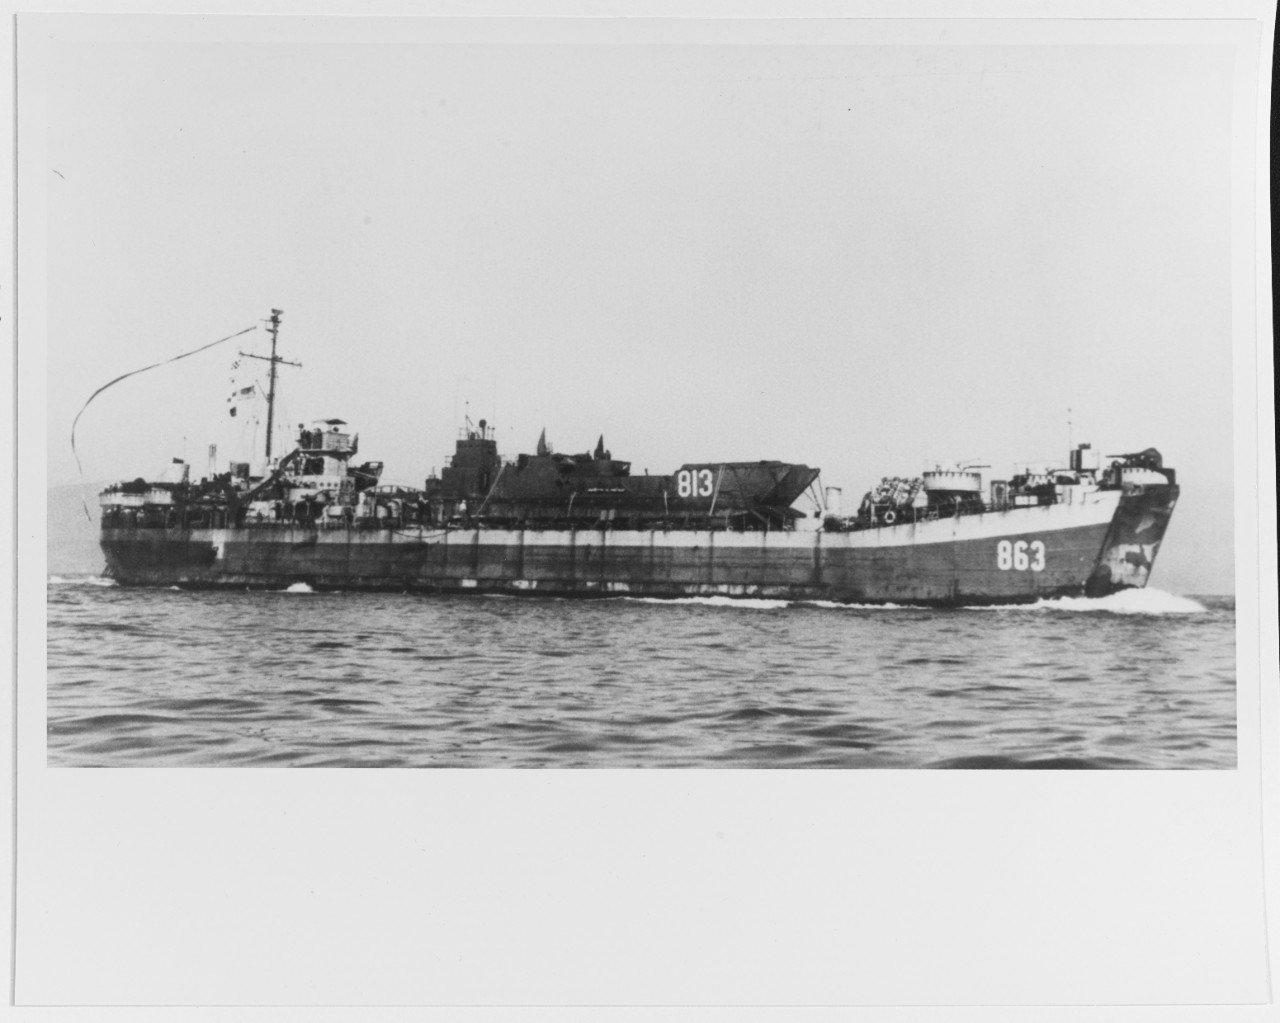 USS LST-863